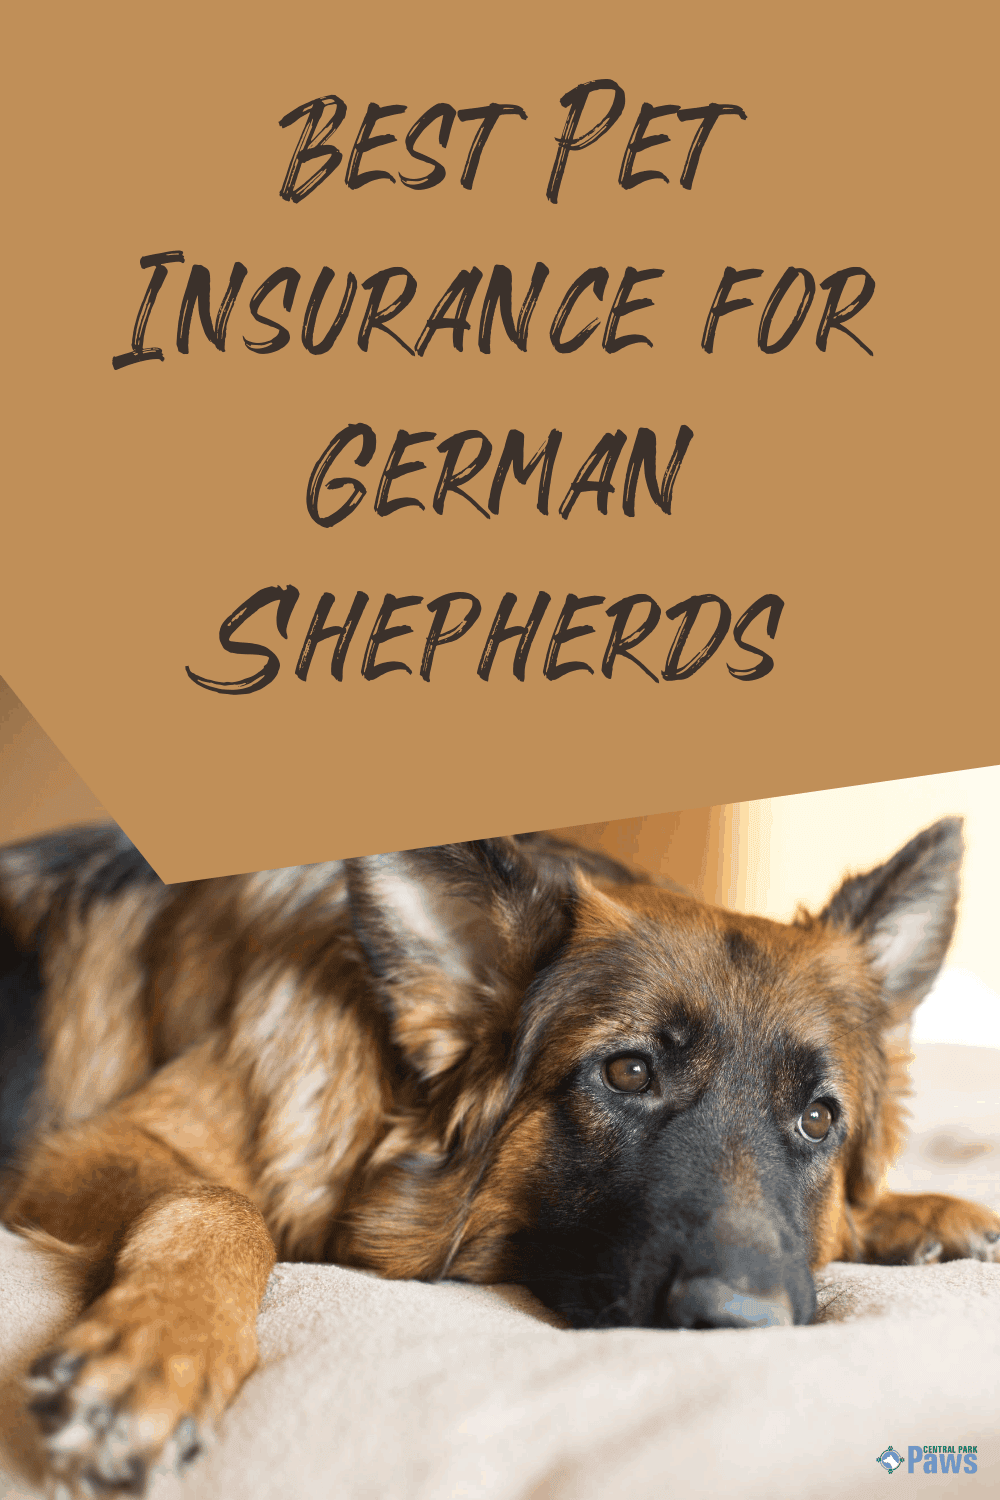 The Best Pet Insurance for German Shepherd Dogs [2021]